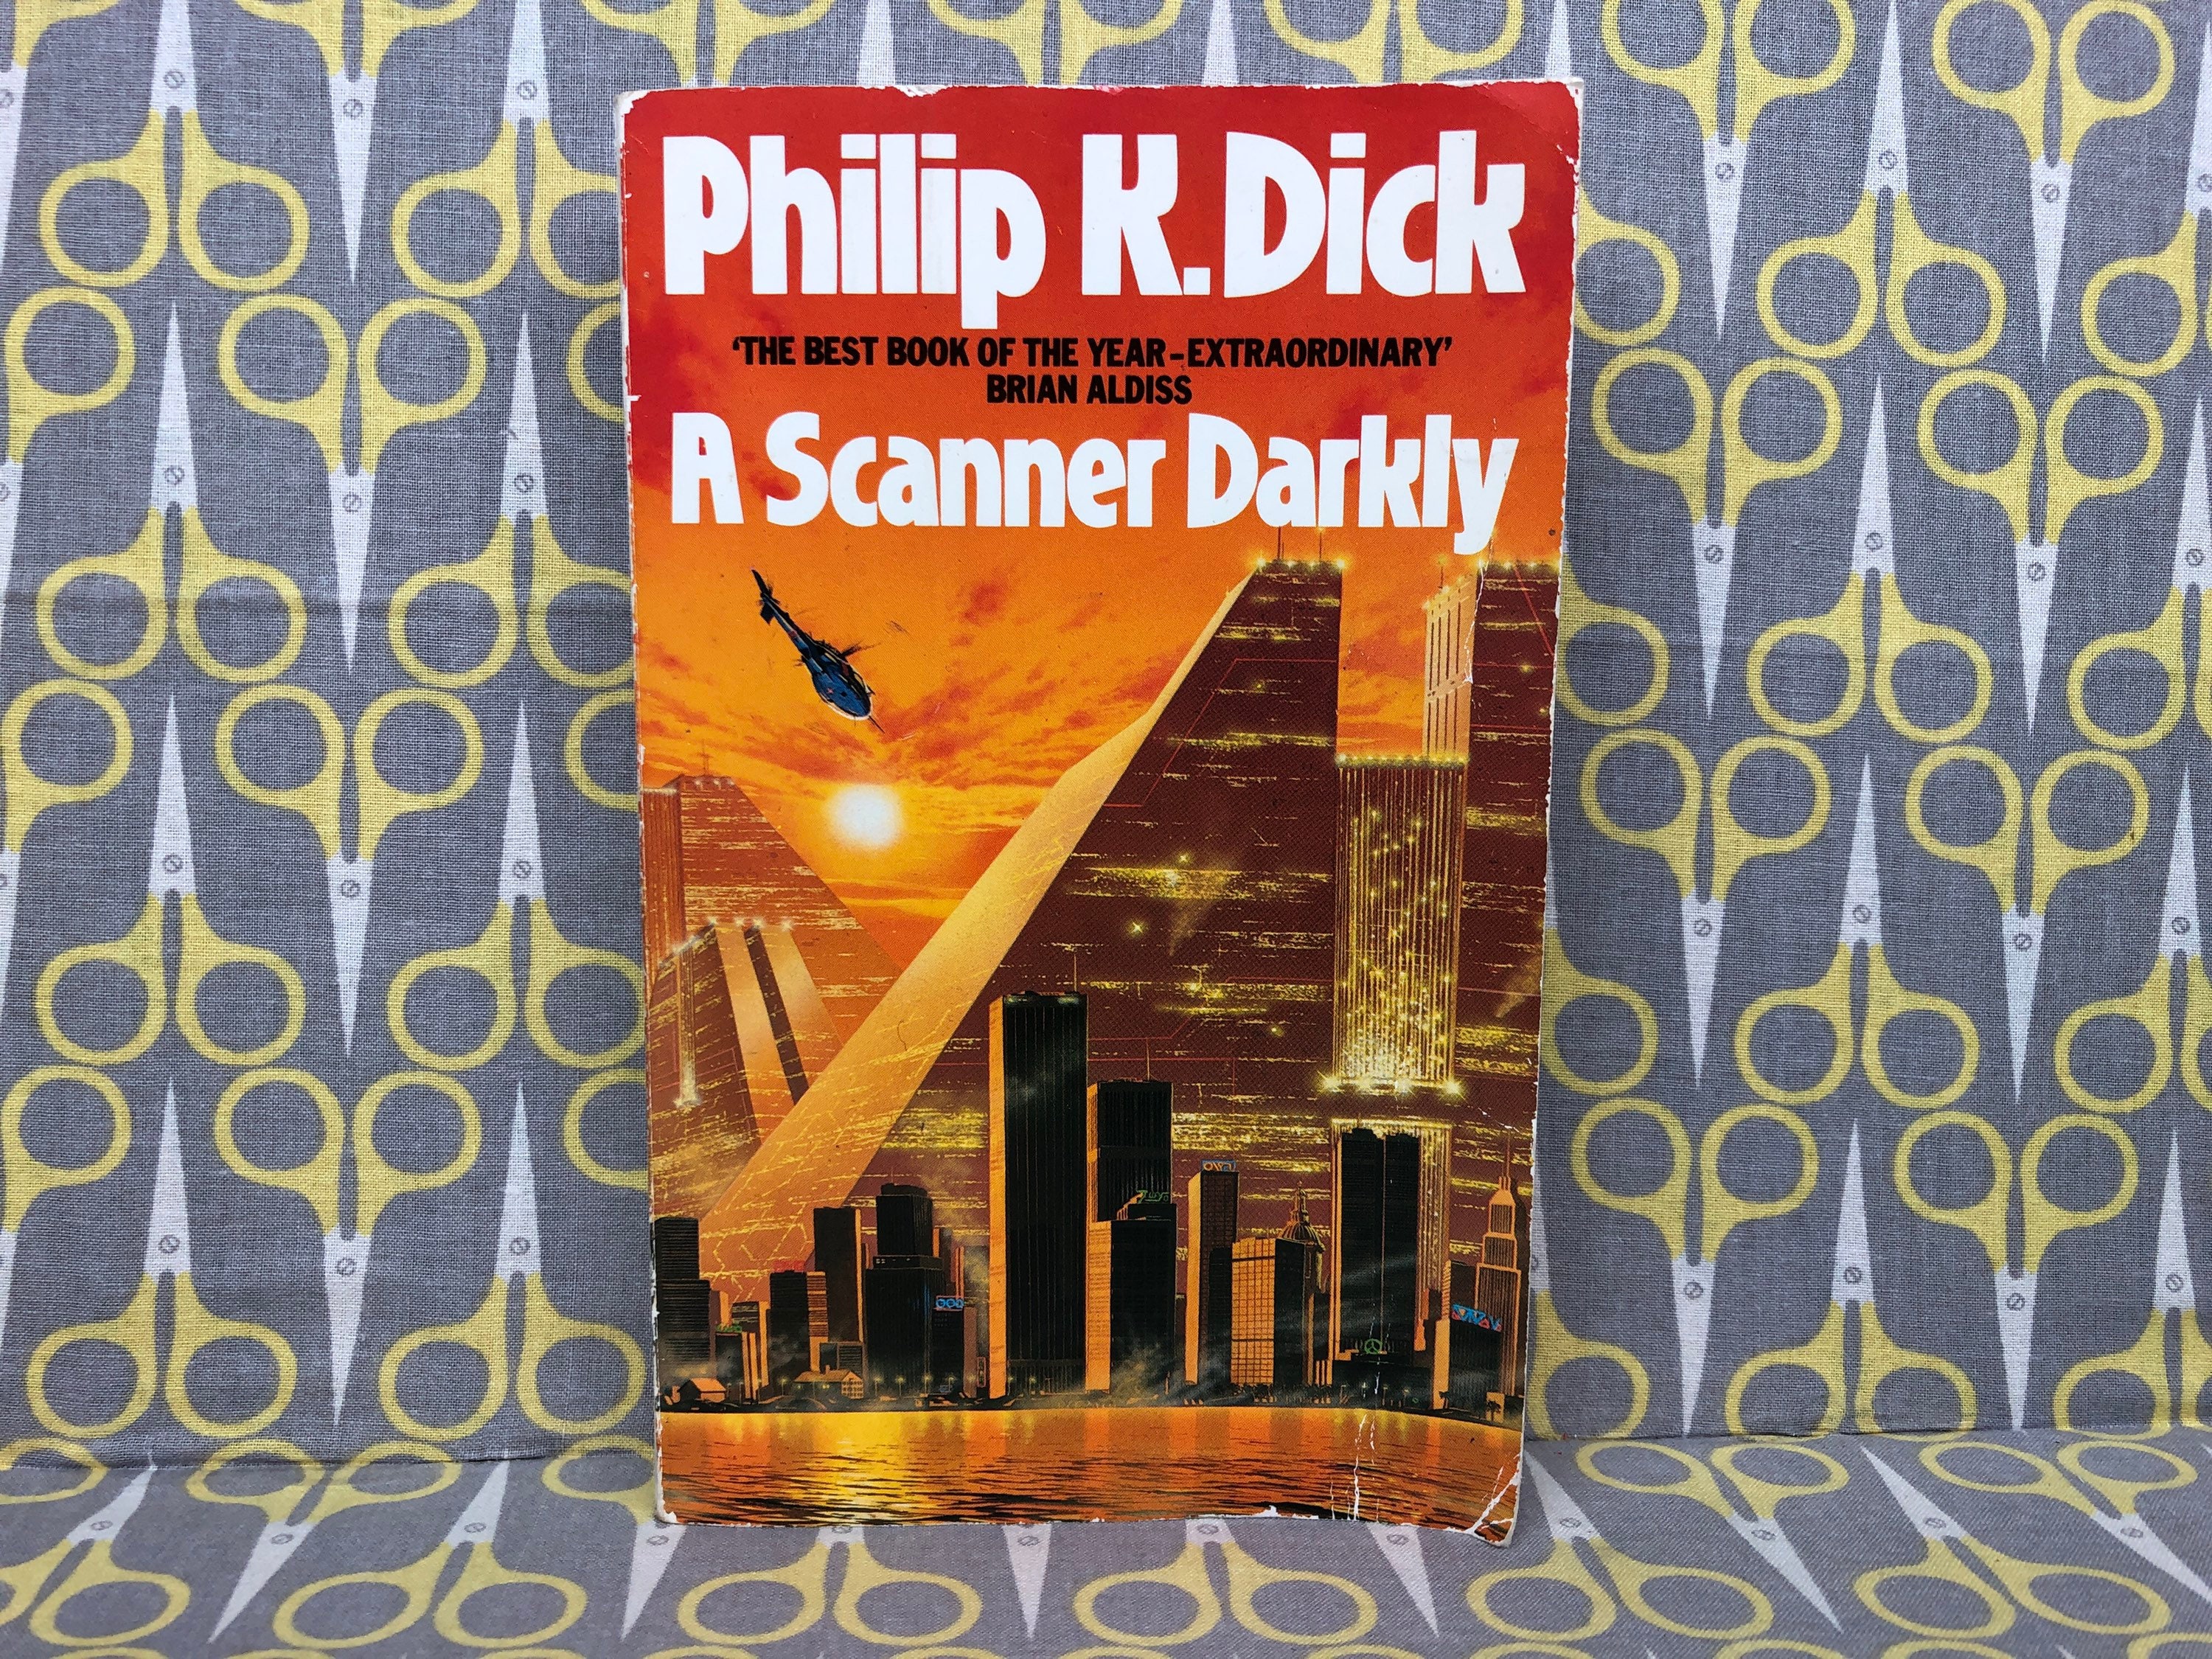 A Scanner Darkly by Philip K